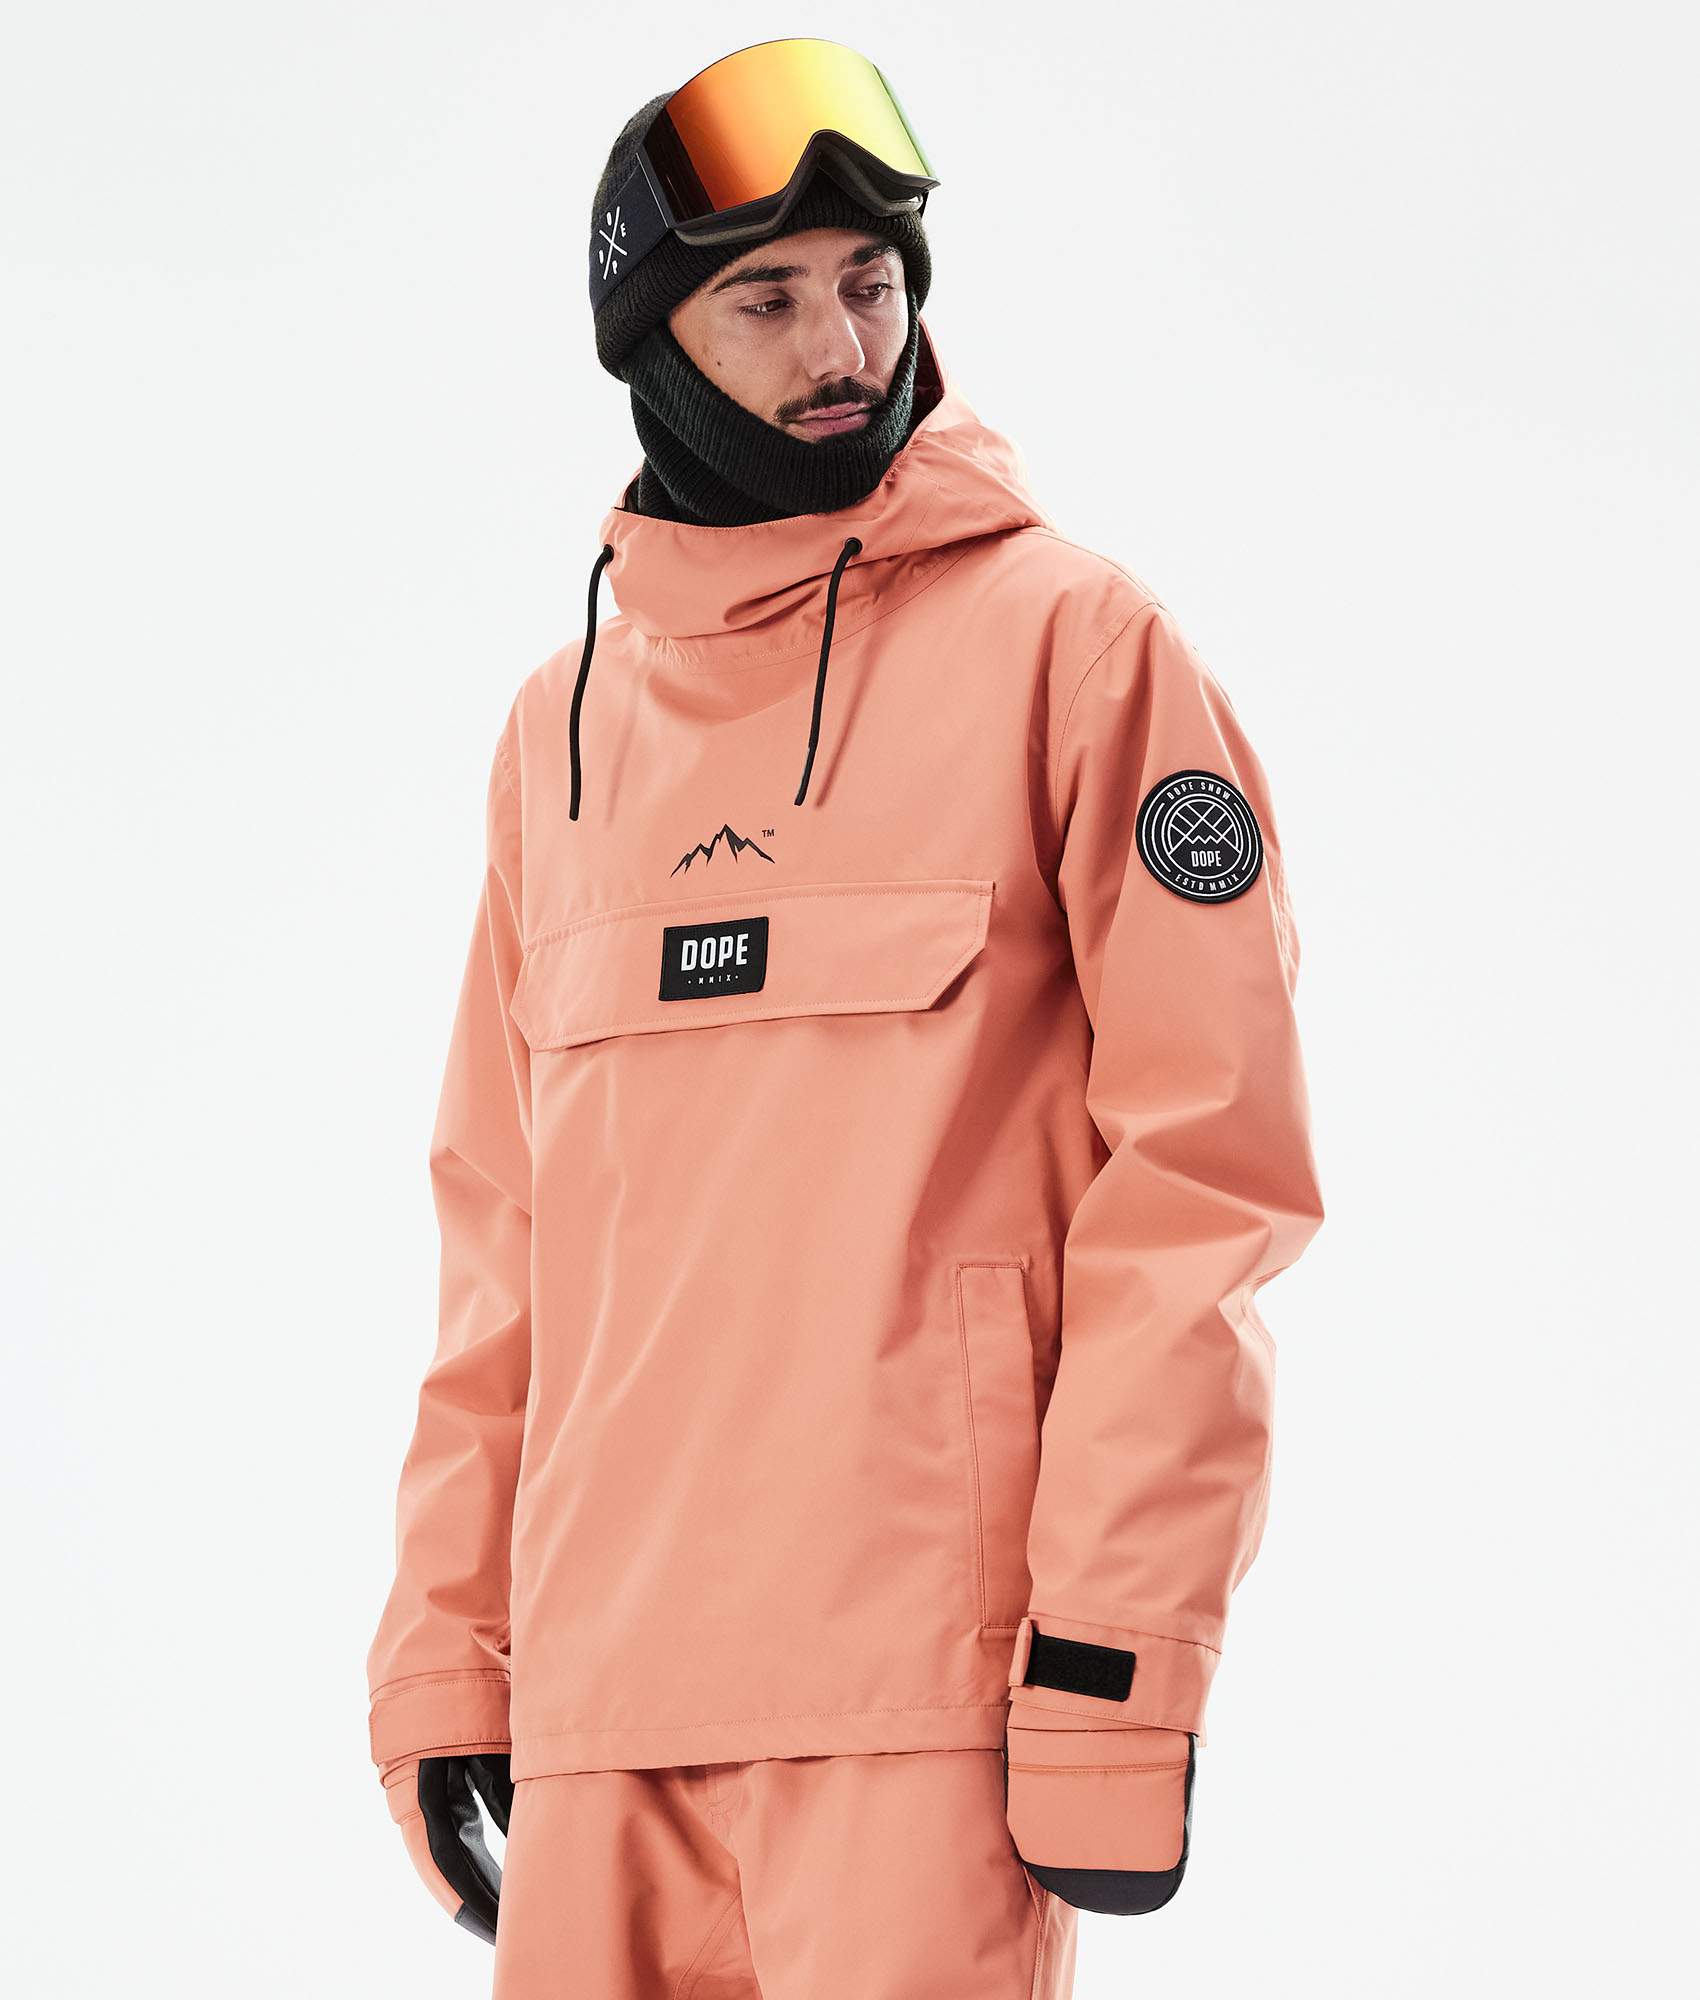 Dope Blizzard 2021 Men's Snowboard Jacket Peach